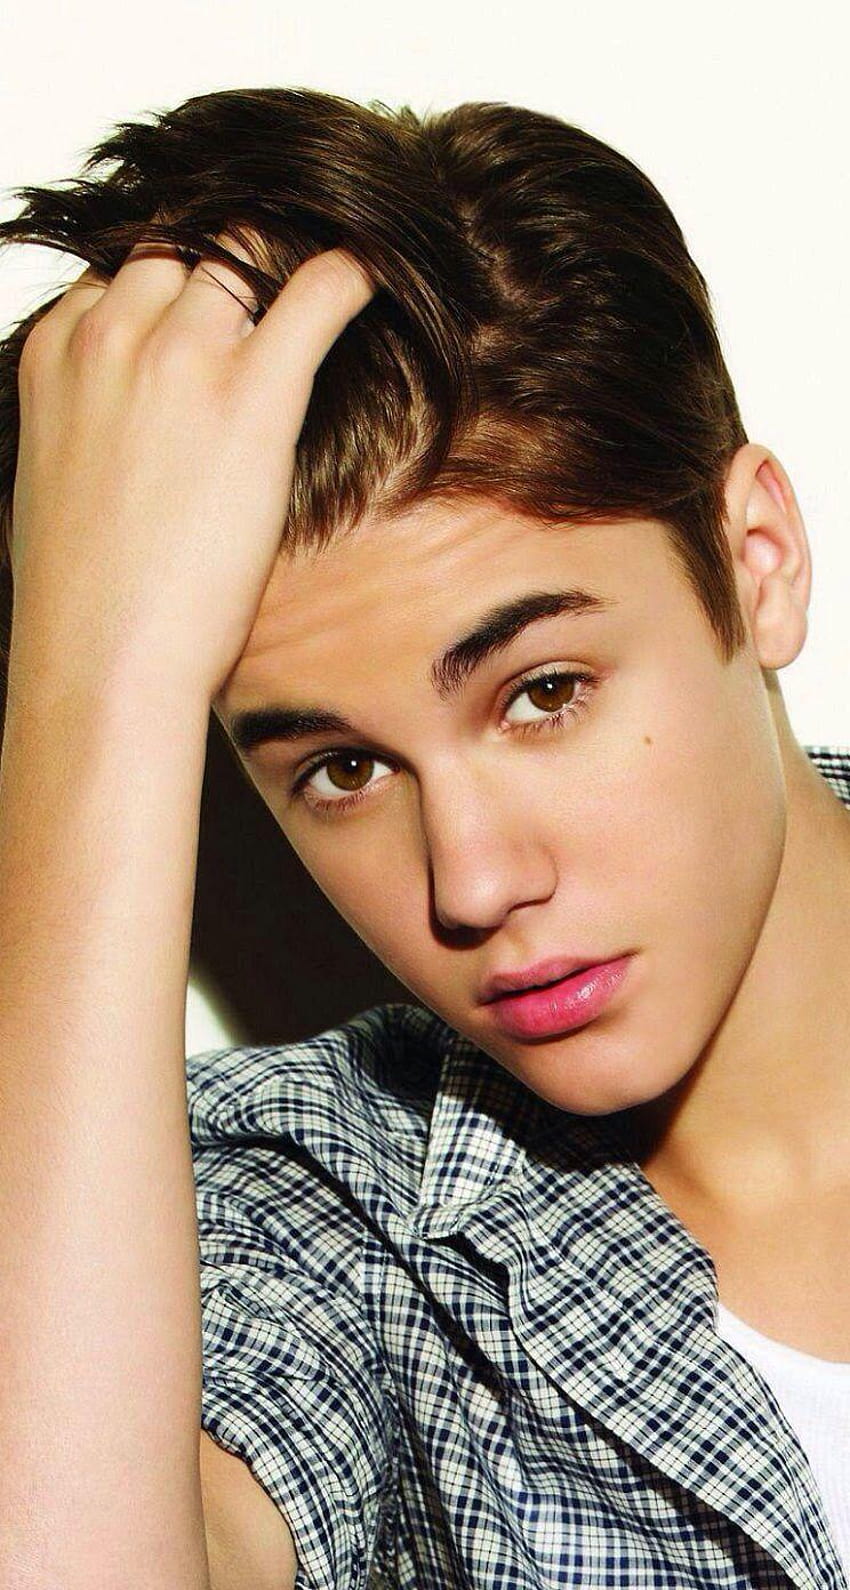 iPhone Justin Bieber, justin bieber cute HD phone wallpaper